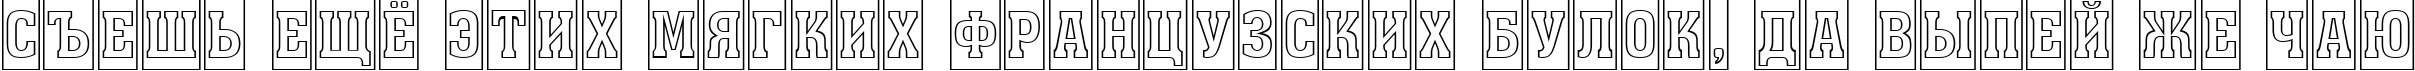 Пример написания шрифтом a_AssuanTitulCmOtl текста на русском